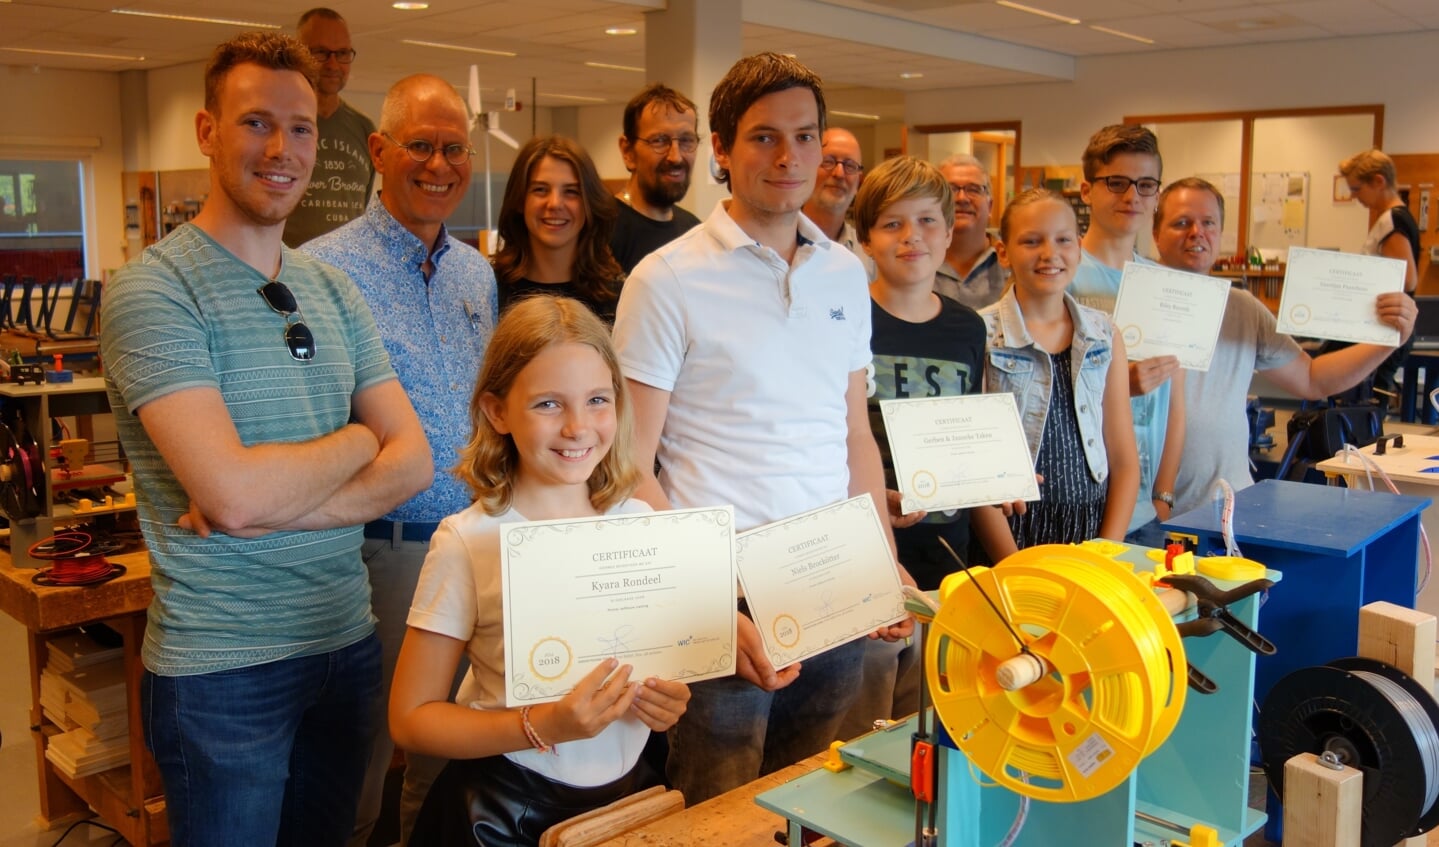 De geslaagden met hun dikverdiende certificaat, dat hen ook nog een eigen 3D-printer opleverde. Foto: Clemens Bielen